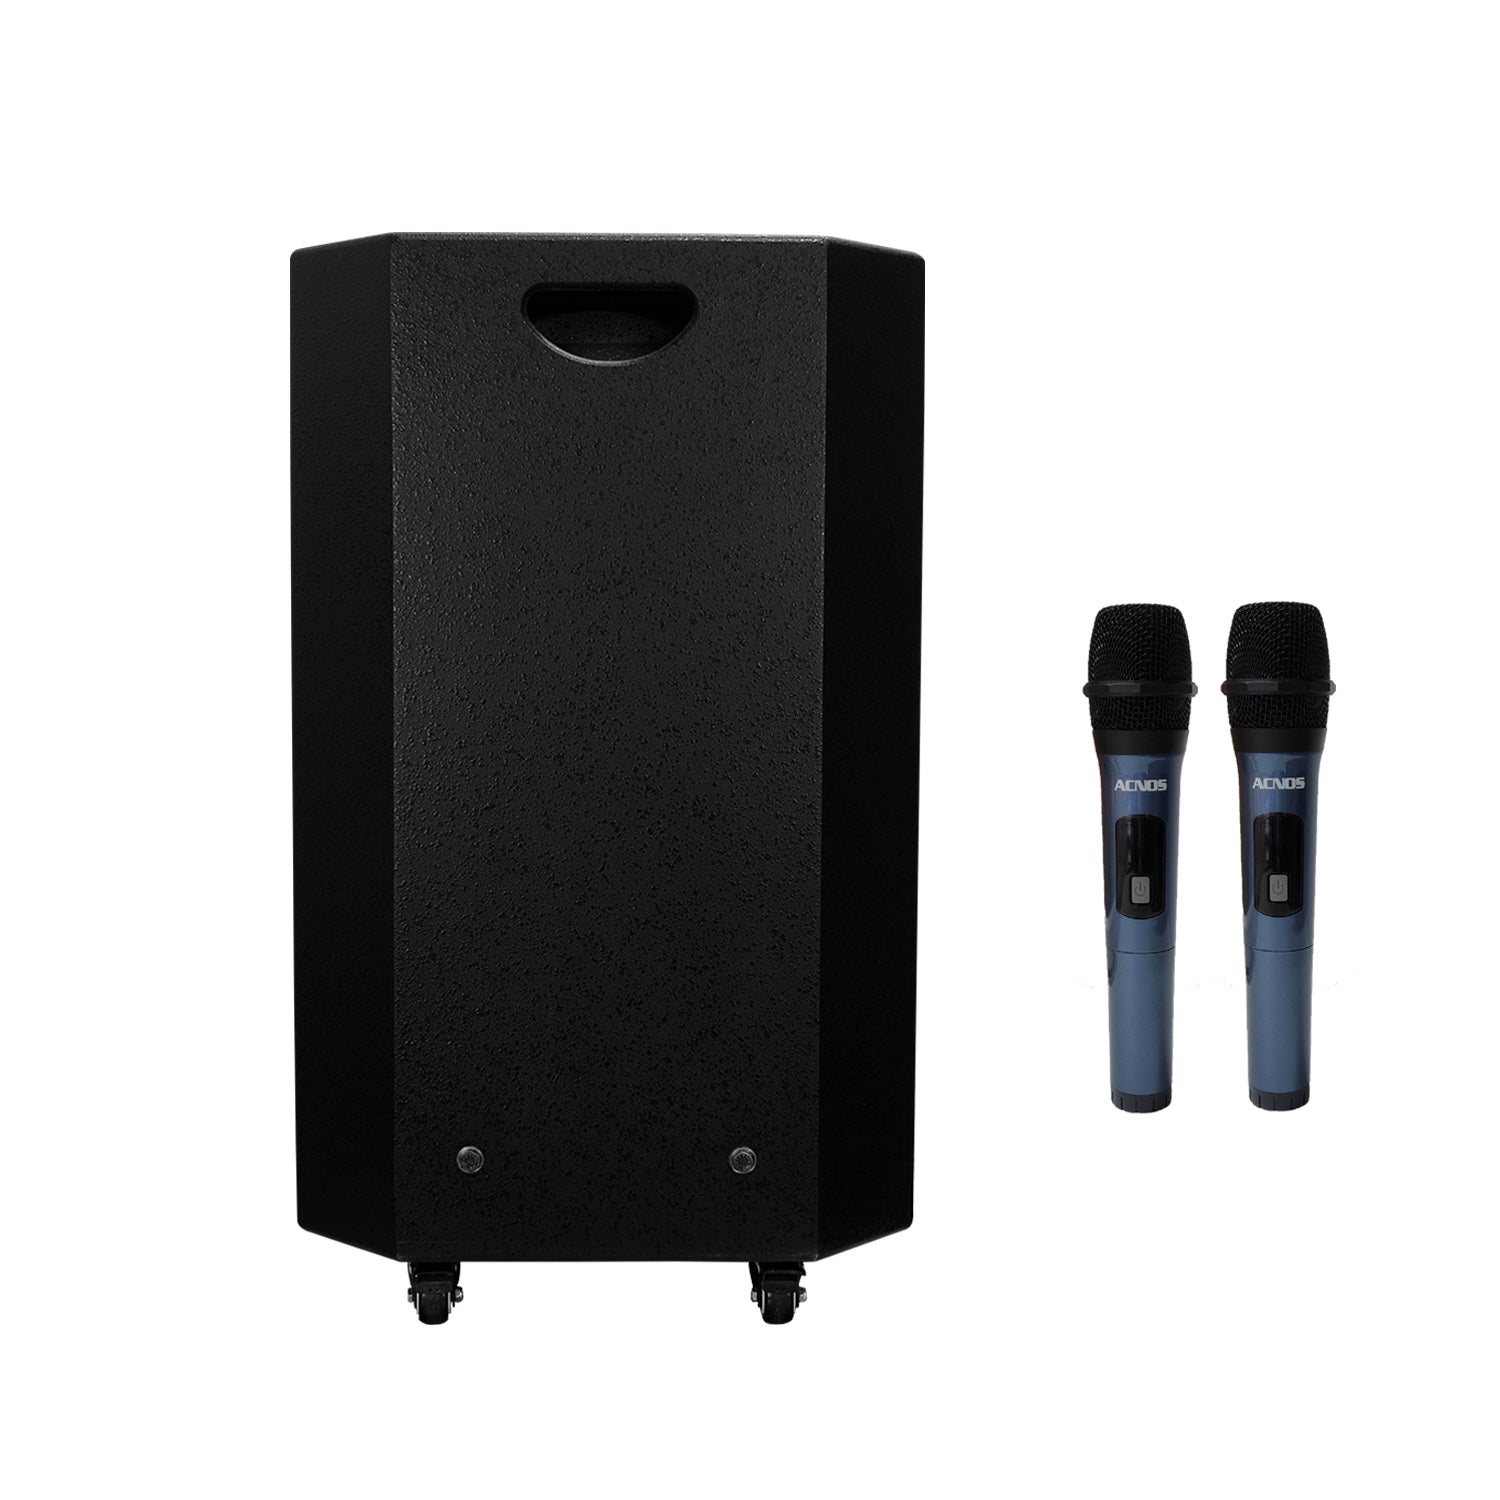 KBeatBox CB-4051-MAX [70W RMS / 450W PMPO] Karaoke Powered Speaker System + 2 Wireless Mic's + Karaoke Cloud App - Karaoke Home Entertainment